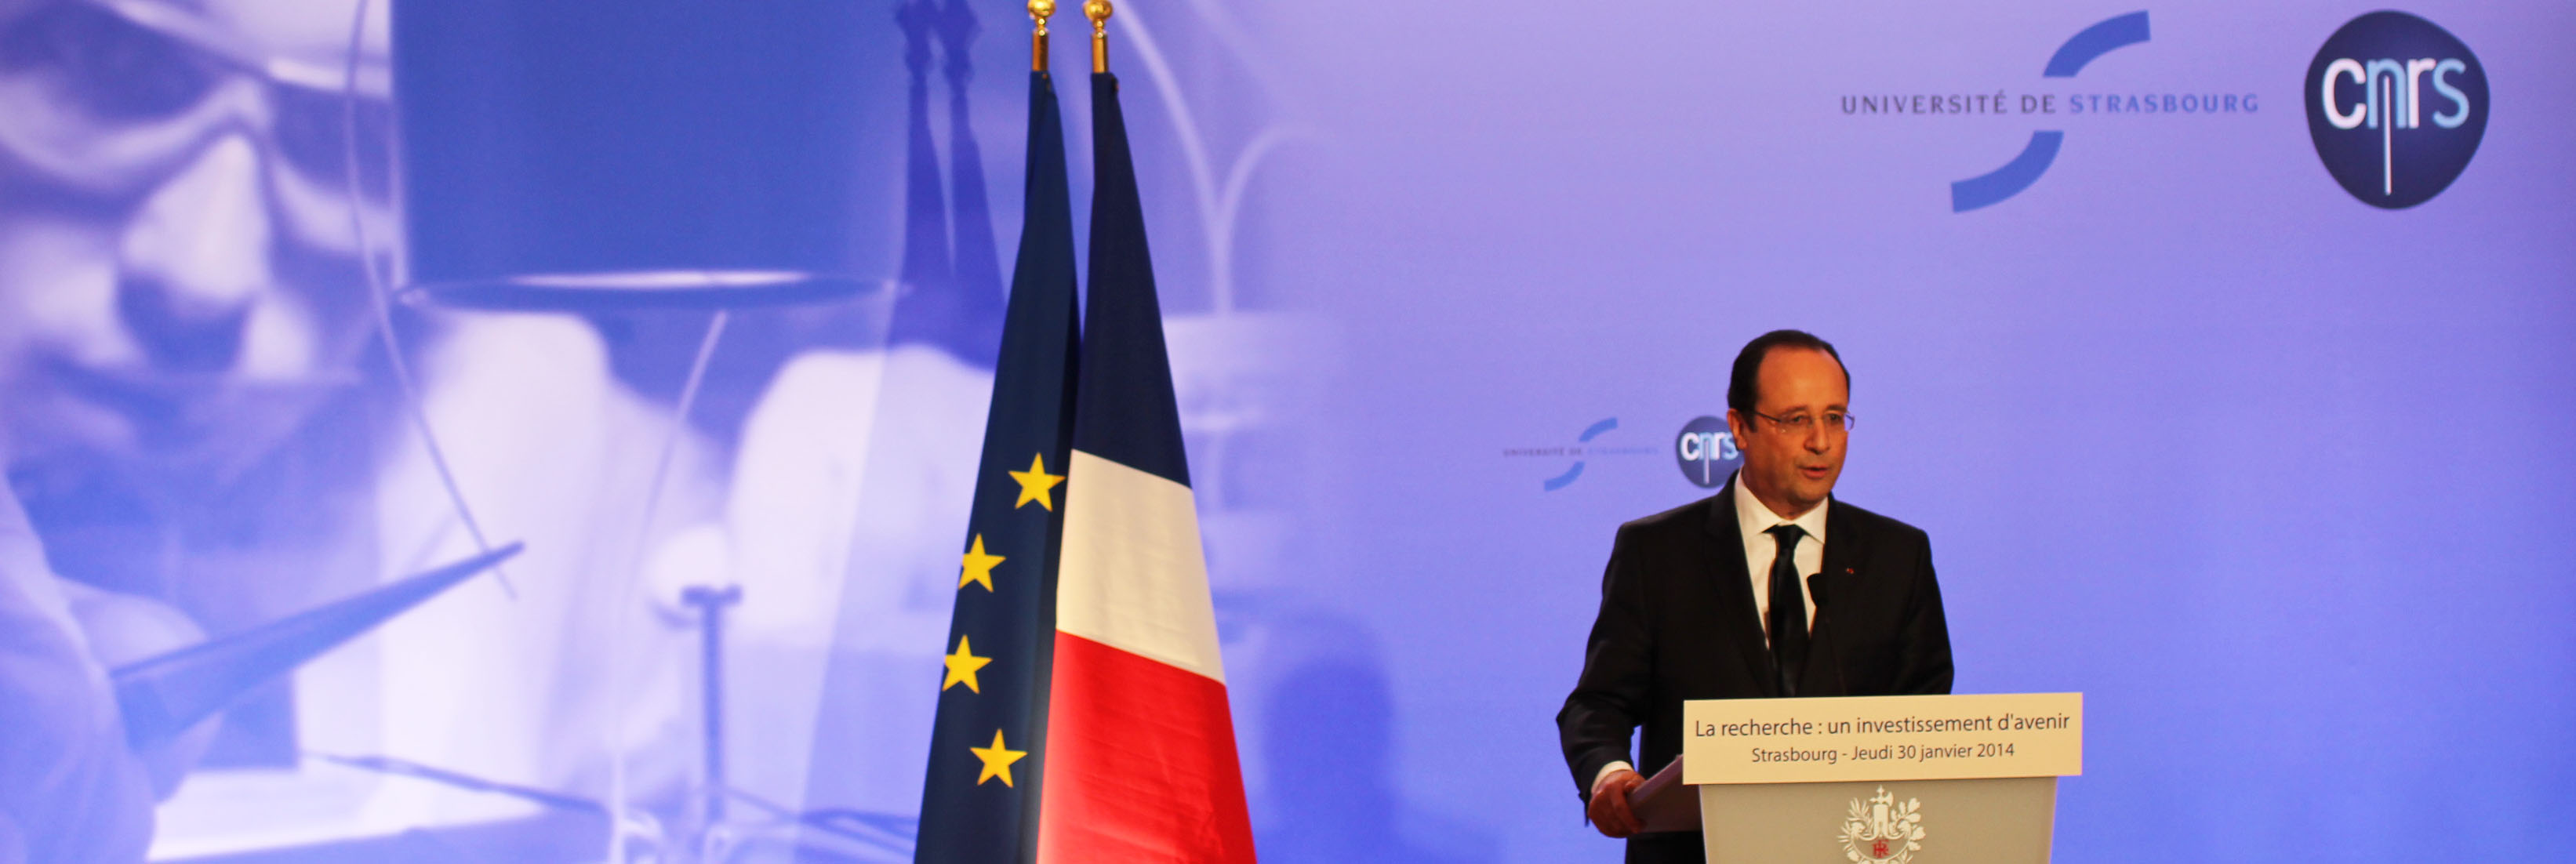 La CPU participe à la visite de François Hollande à l'université de Strasbourg